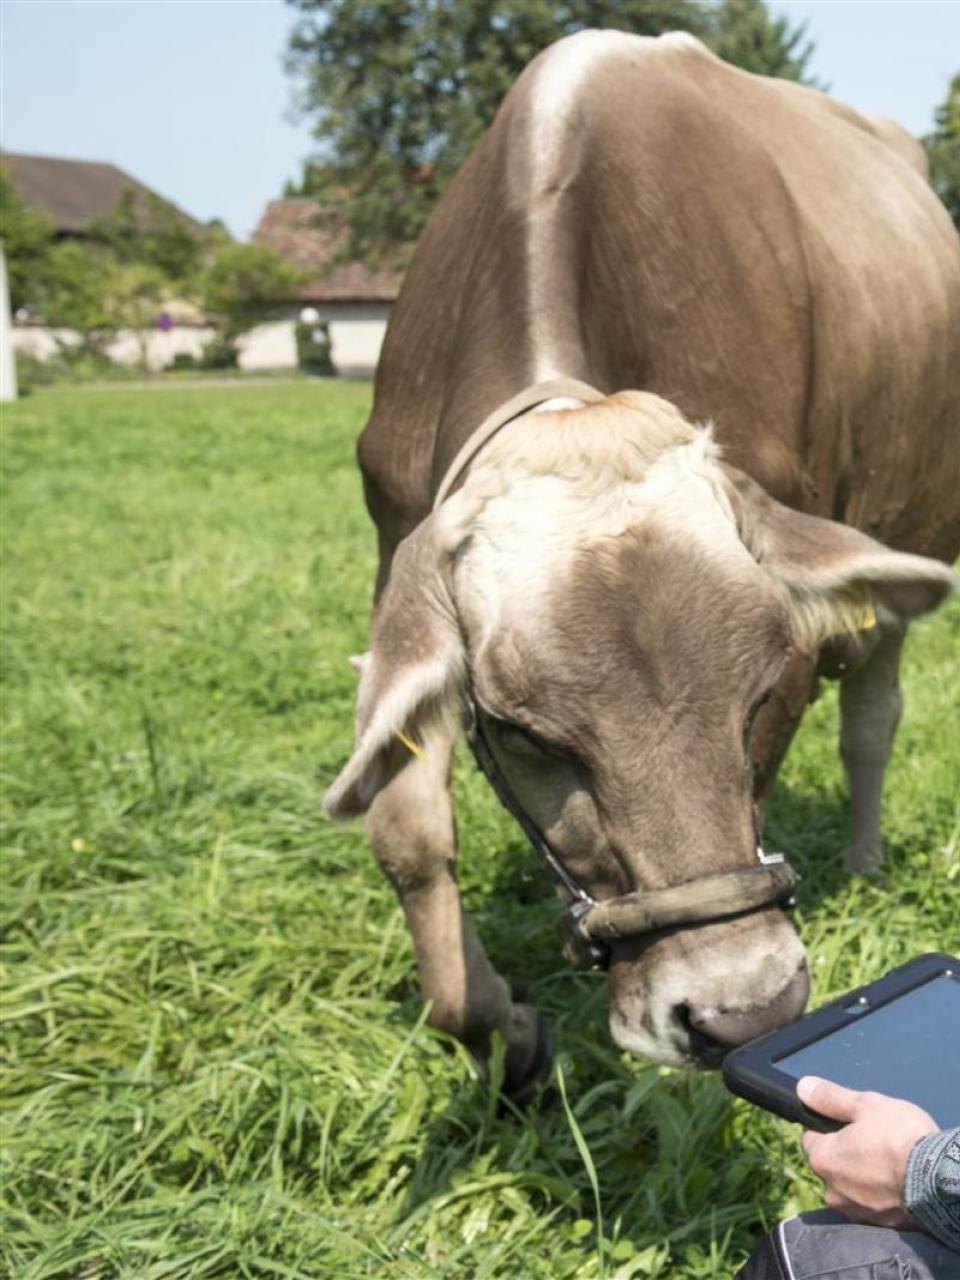 I dati raccolti grazie a una cavezza connessa a un podometro permettono di seguire i movimenti delle vacche su un tablet. ©Agroscope, Gabriela Brändle